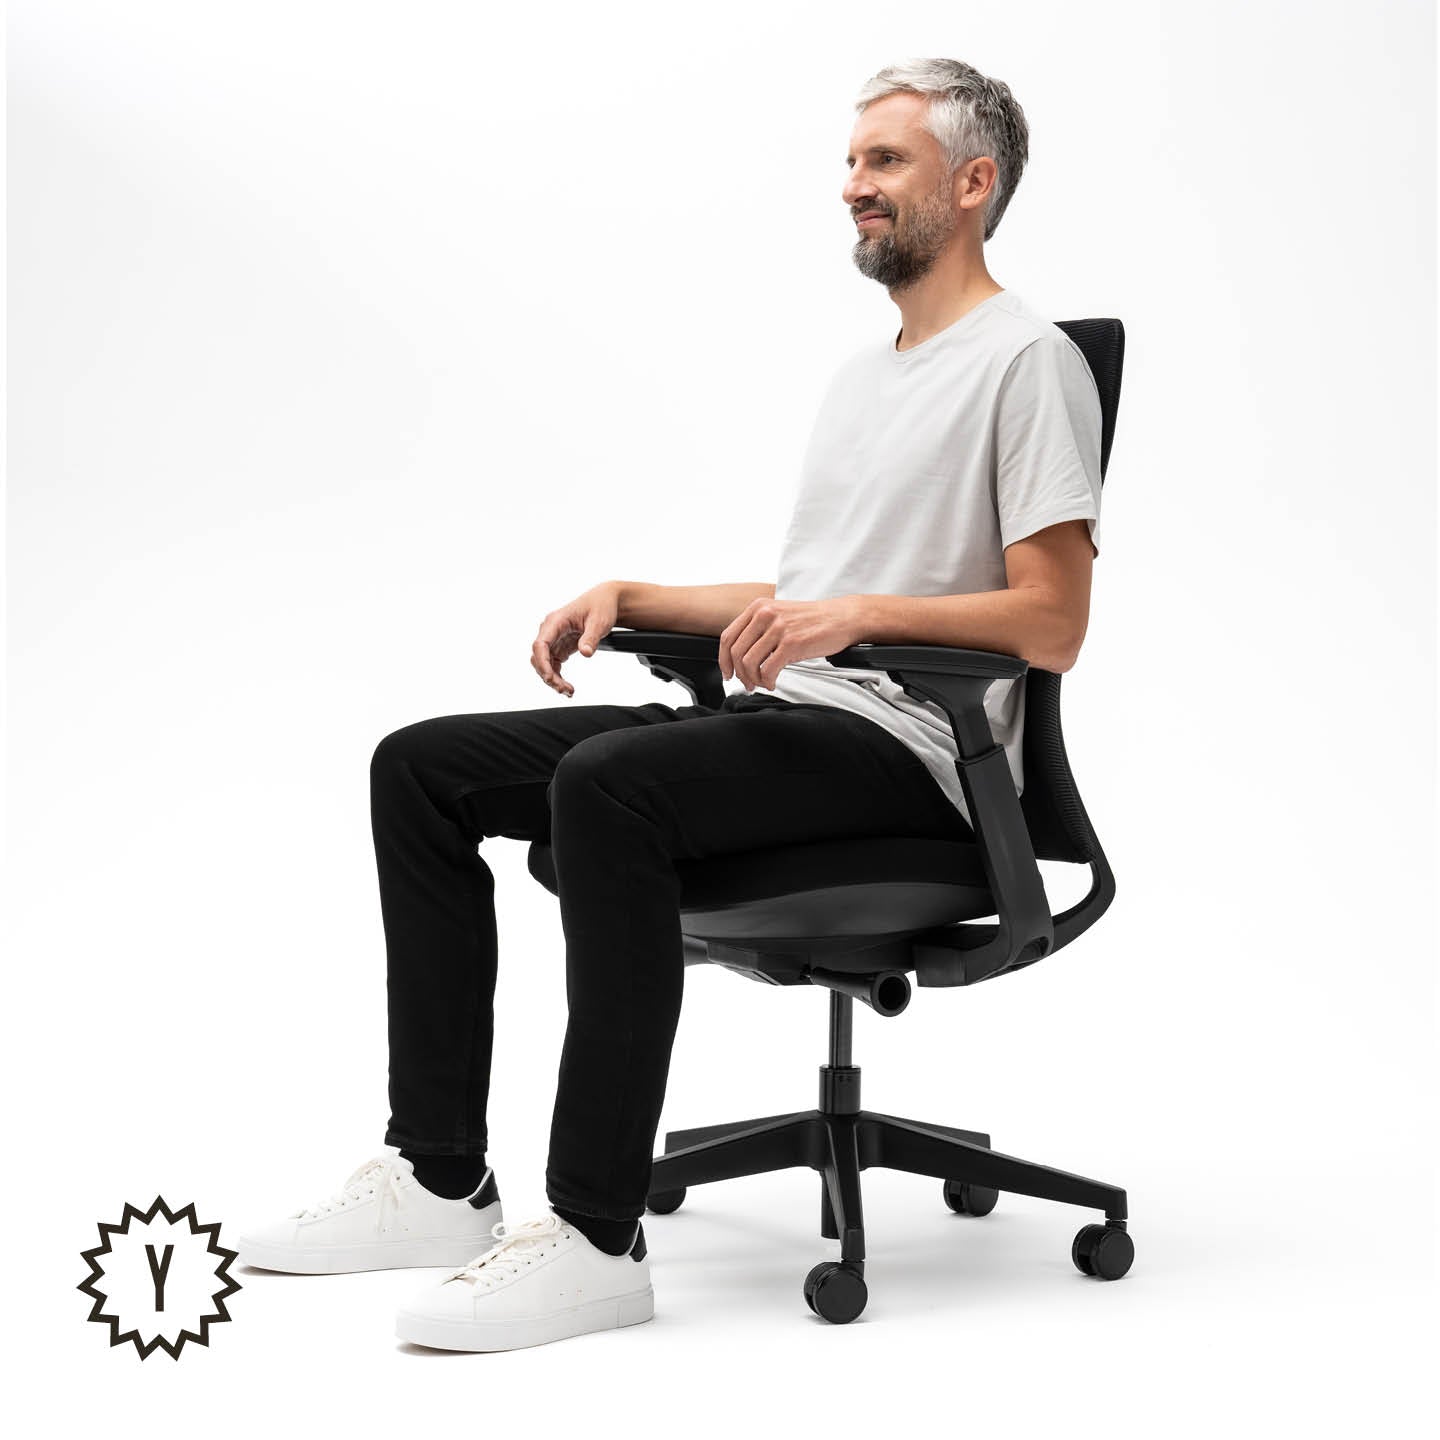 Anpassbarer Bürodrehstuhl Yaasa Chair Essential